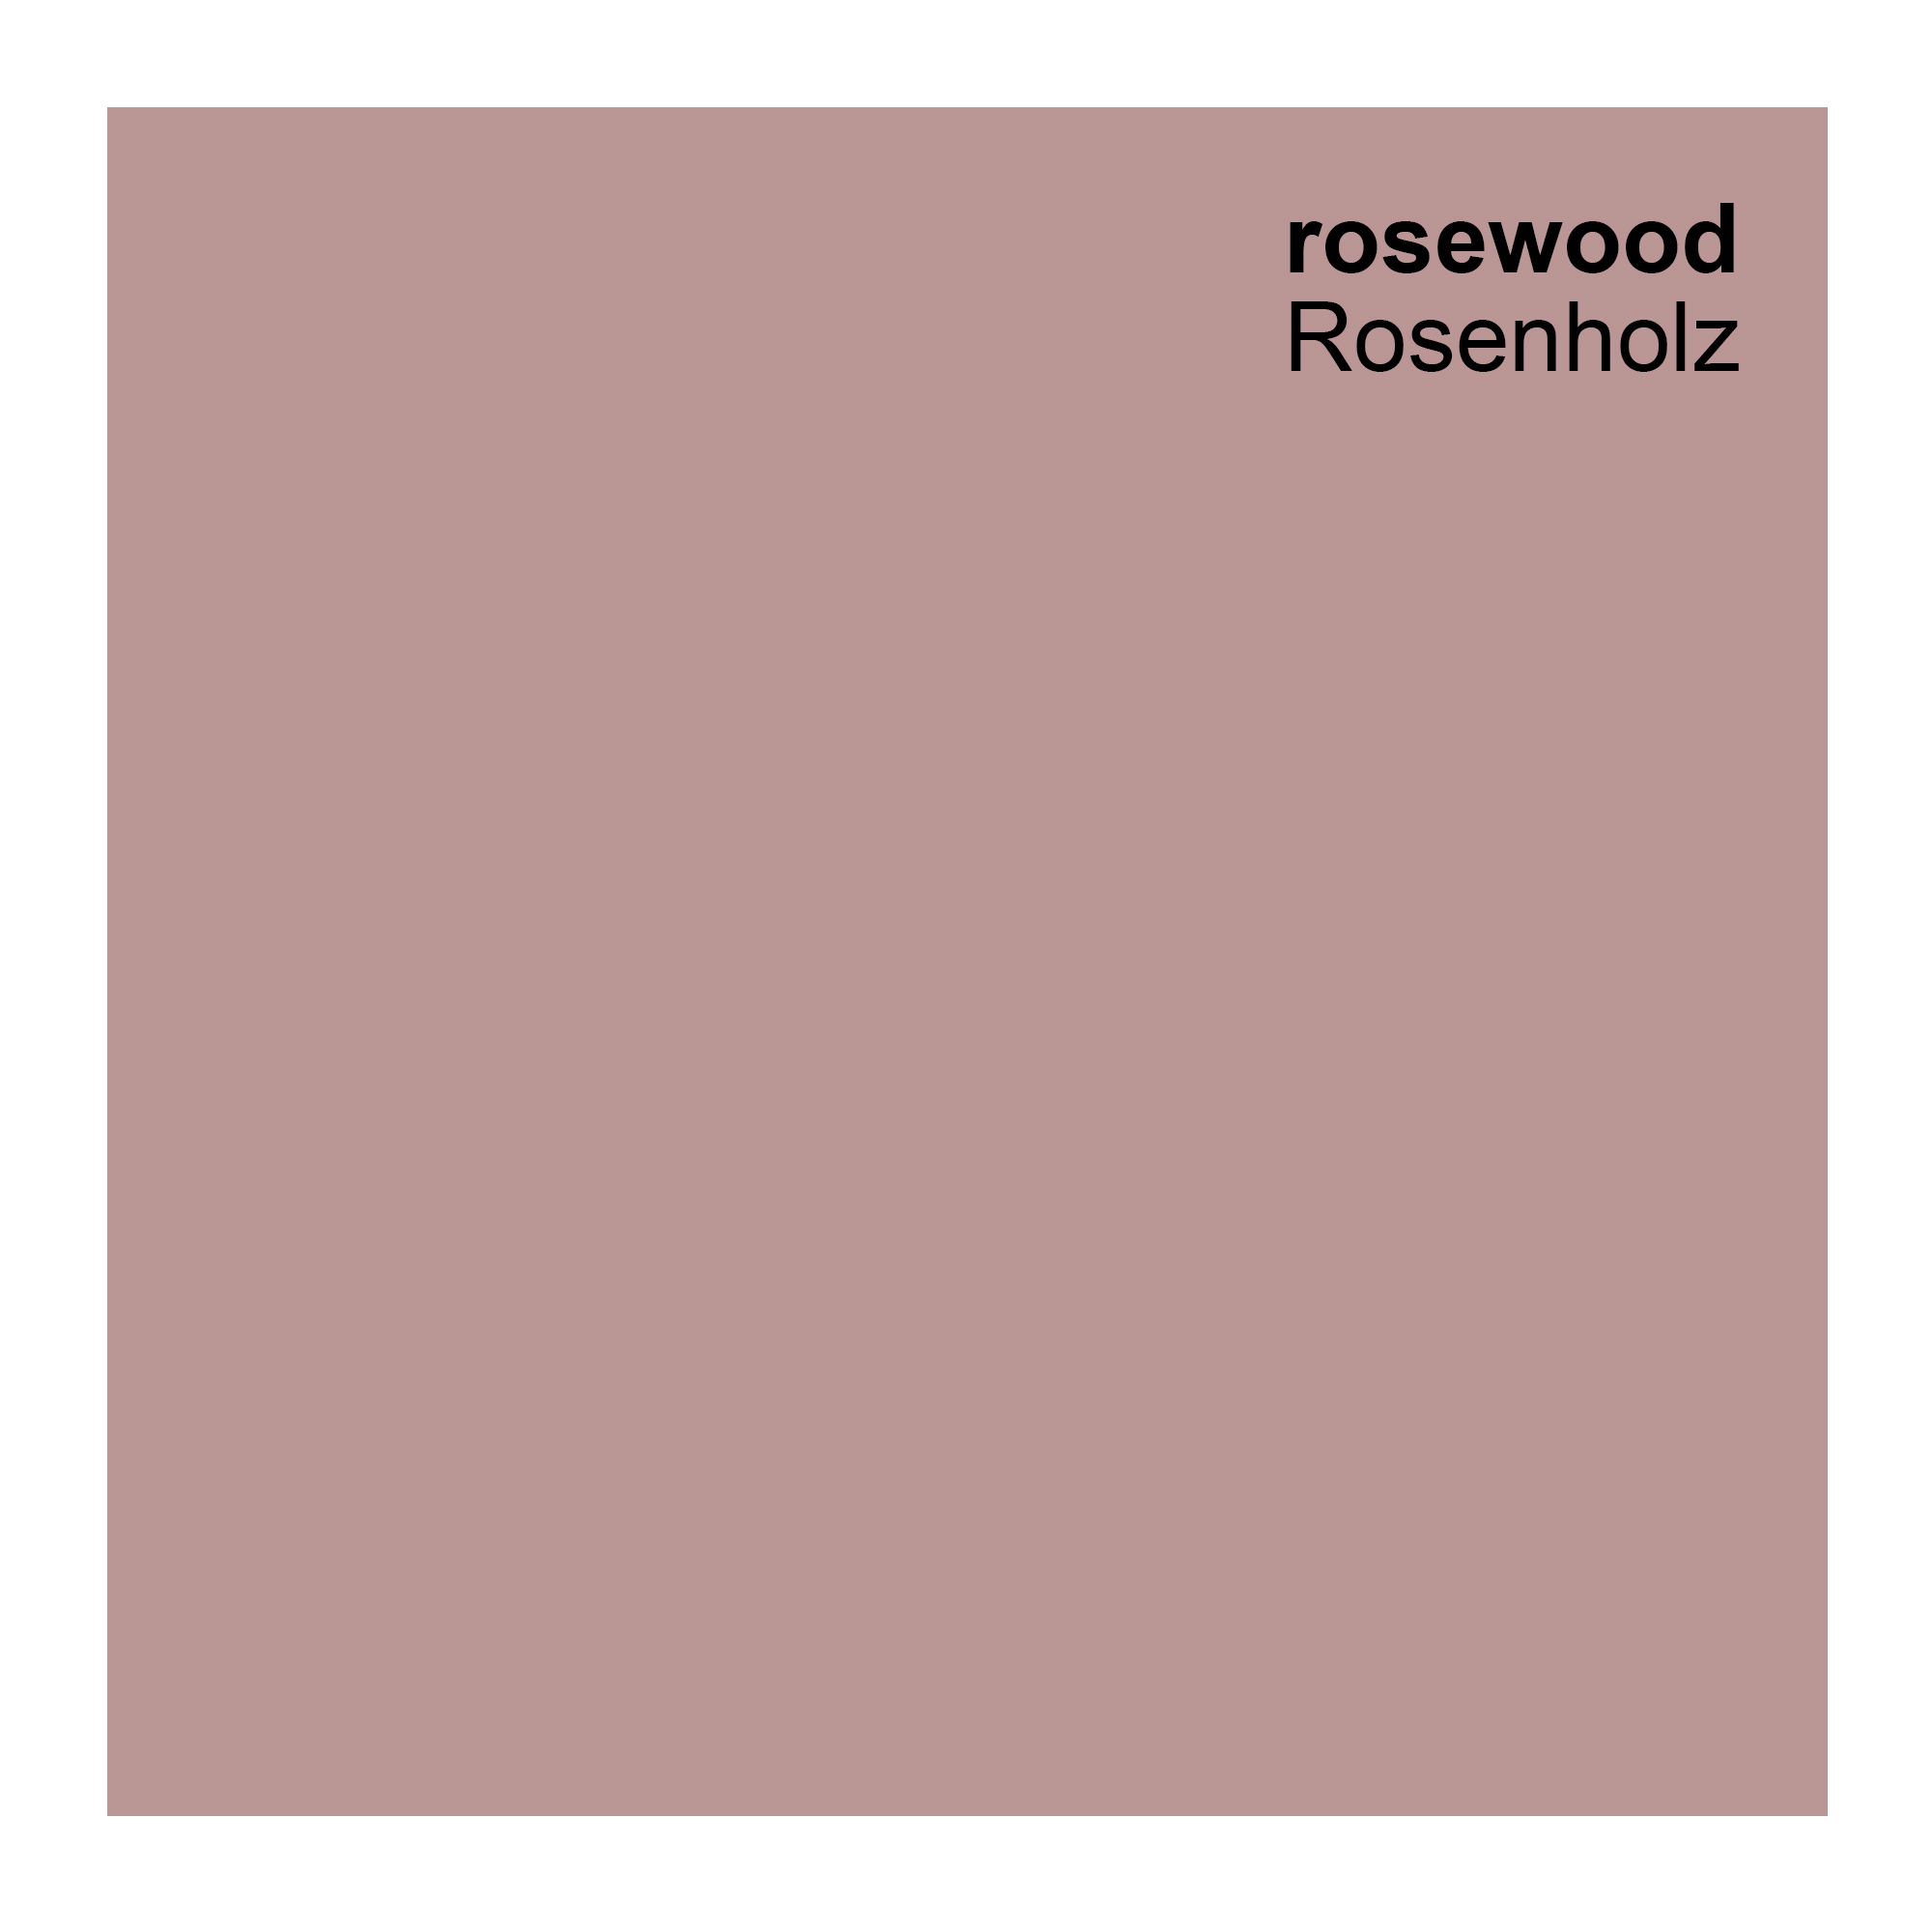 Silikonharz Fassadenfarbe, Rosewood Rot 2,5 Liter, hochwertige, matte, wasserabweisende Aussen-Dispersion, sehr guter Regenschutz - Abperleffekt